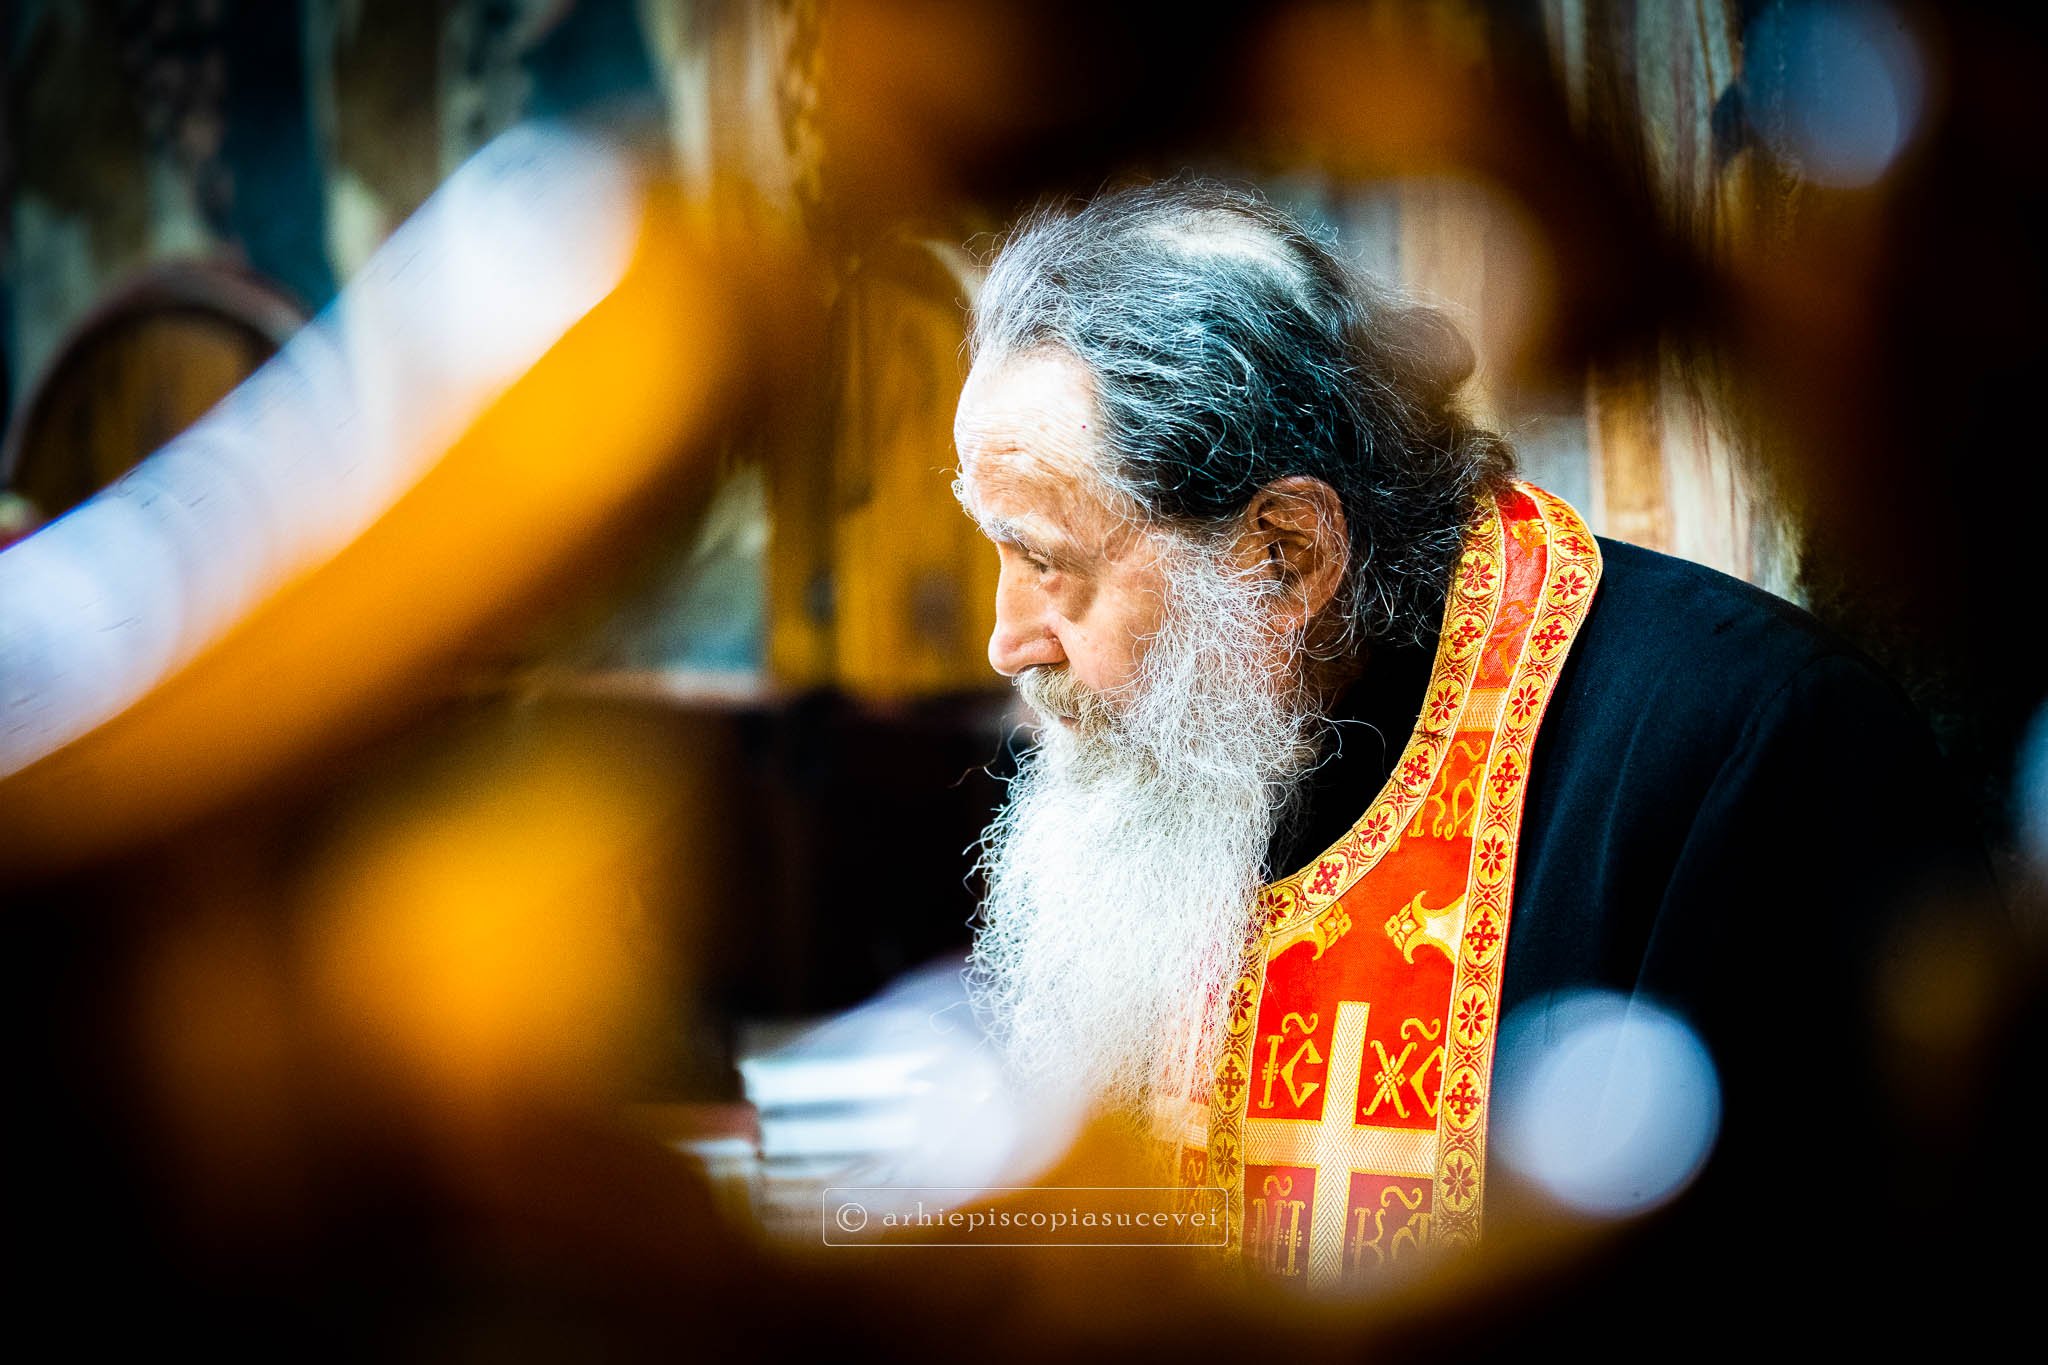  Doliu în Biserica Ortodoxă! A murit unul dintre cei mai iubiți duhovnici români